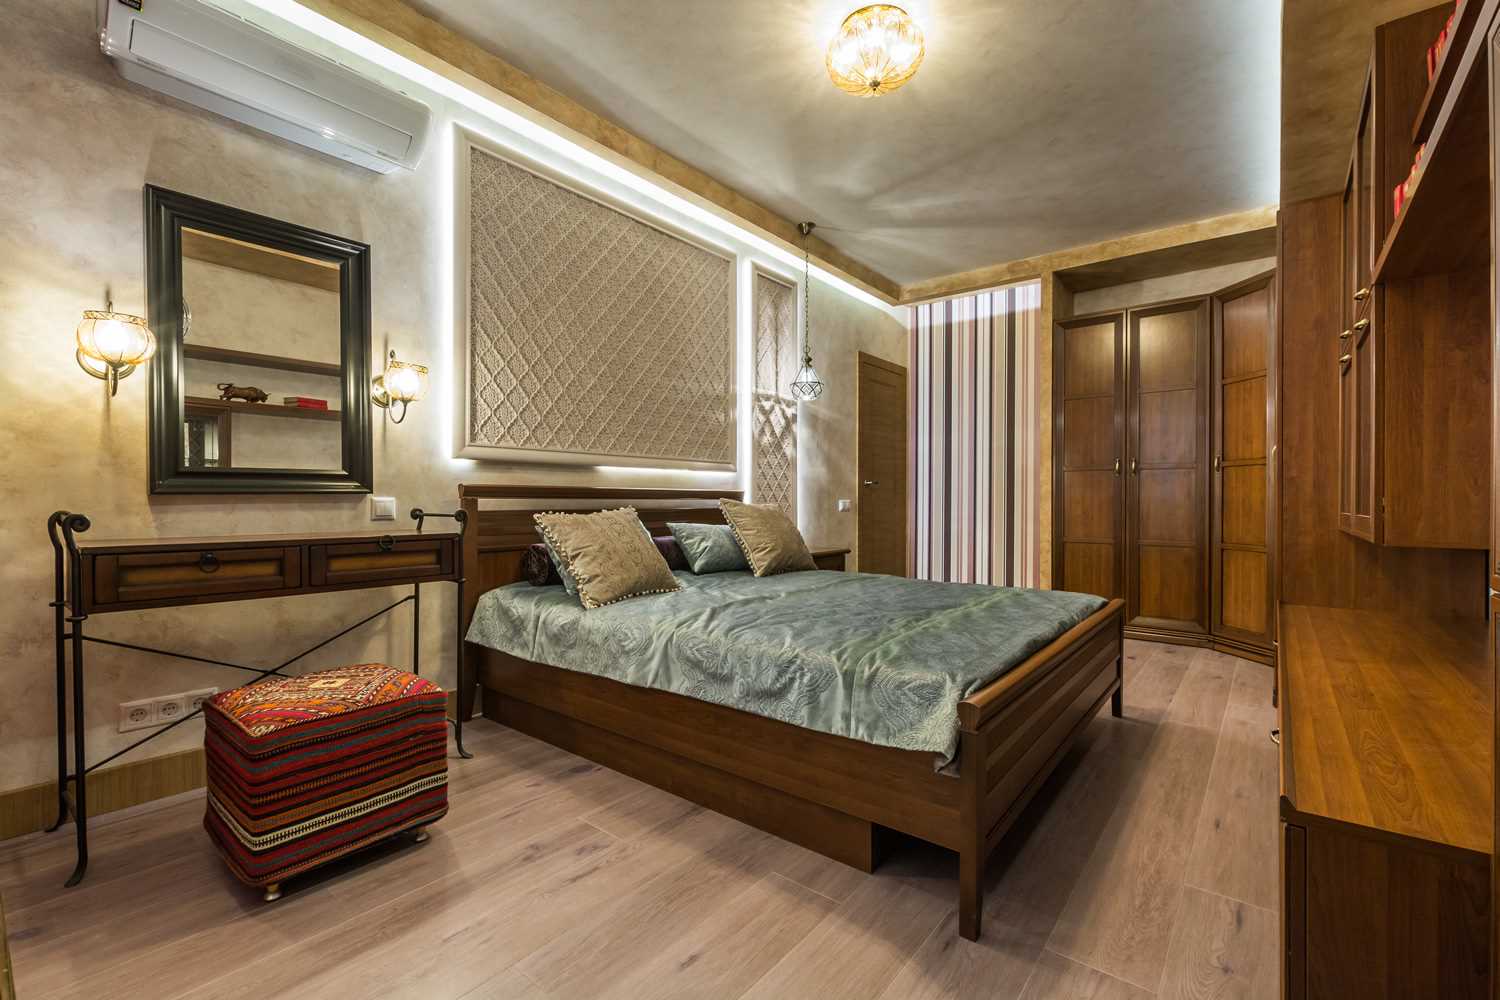 הרעיון של הטיח הדקורטיבי המקורי בעיצוב הדירה